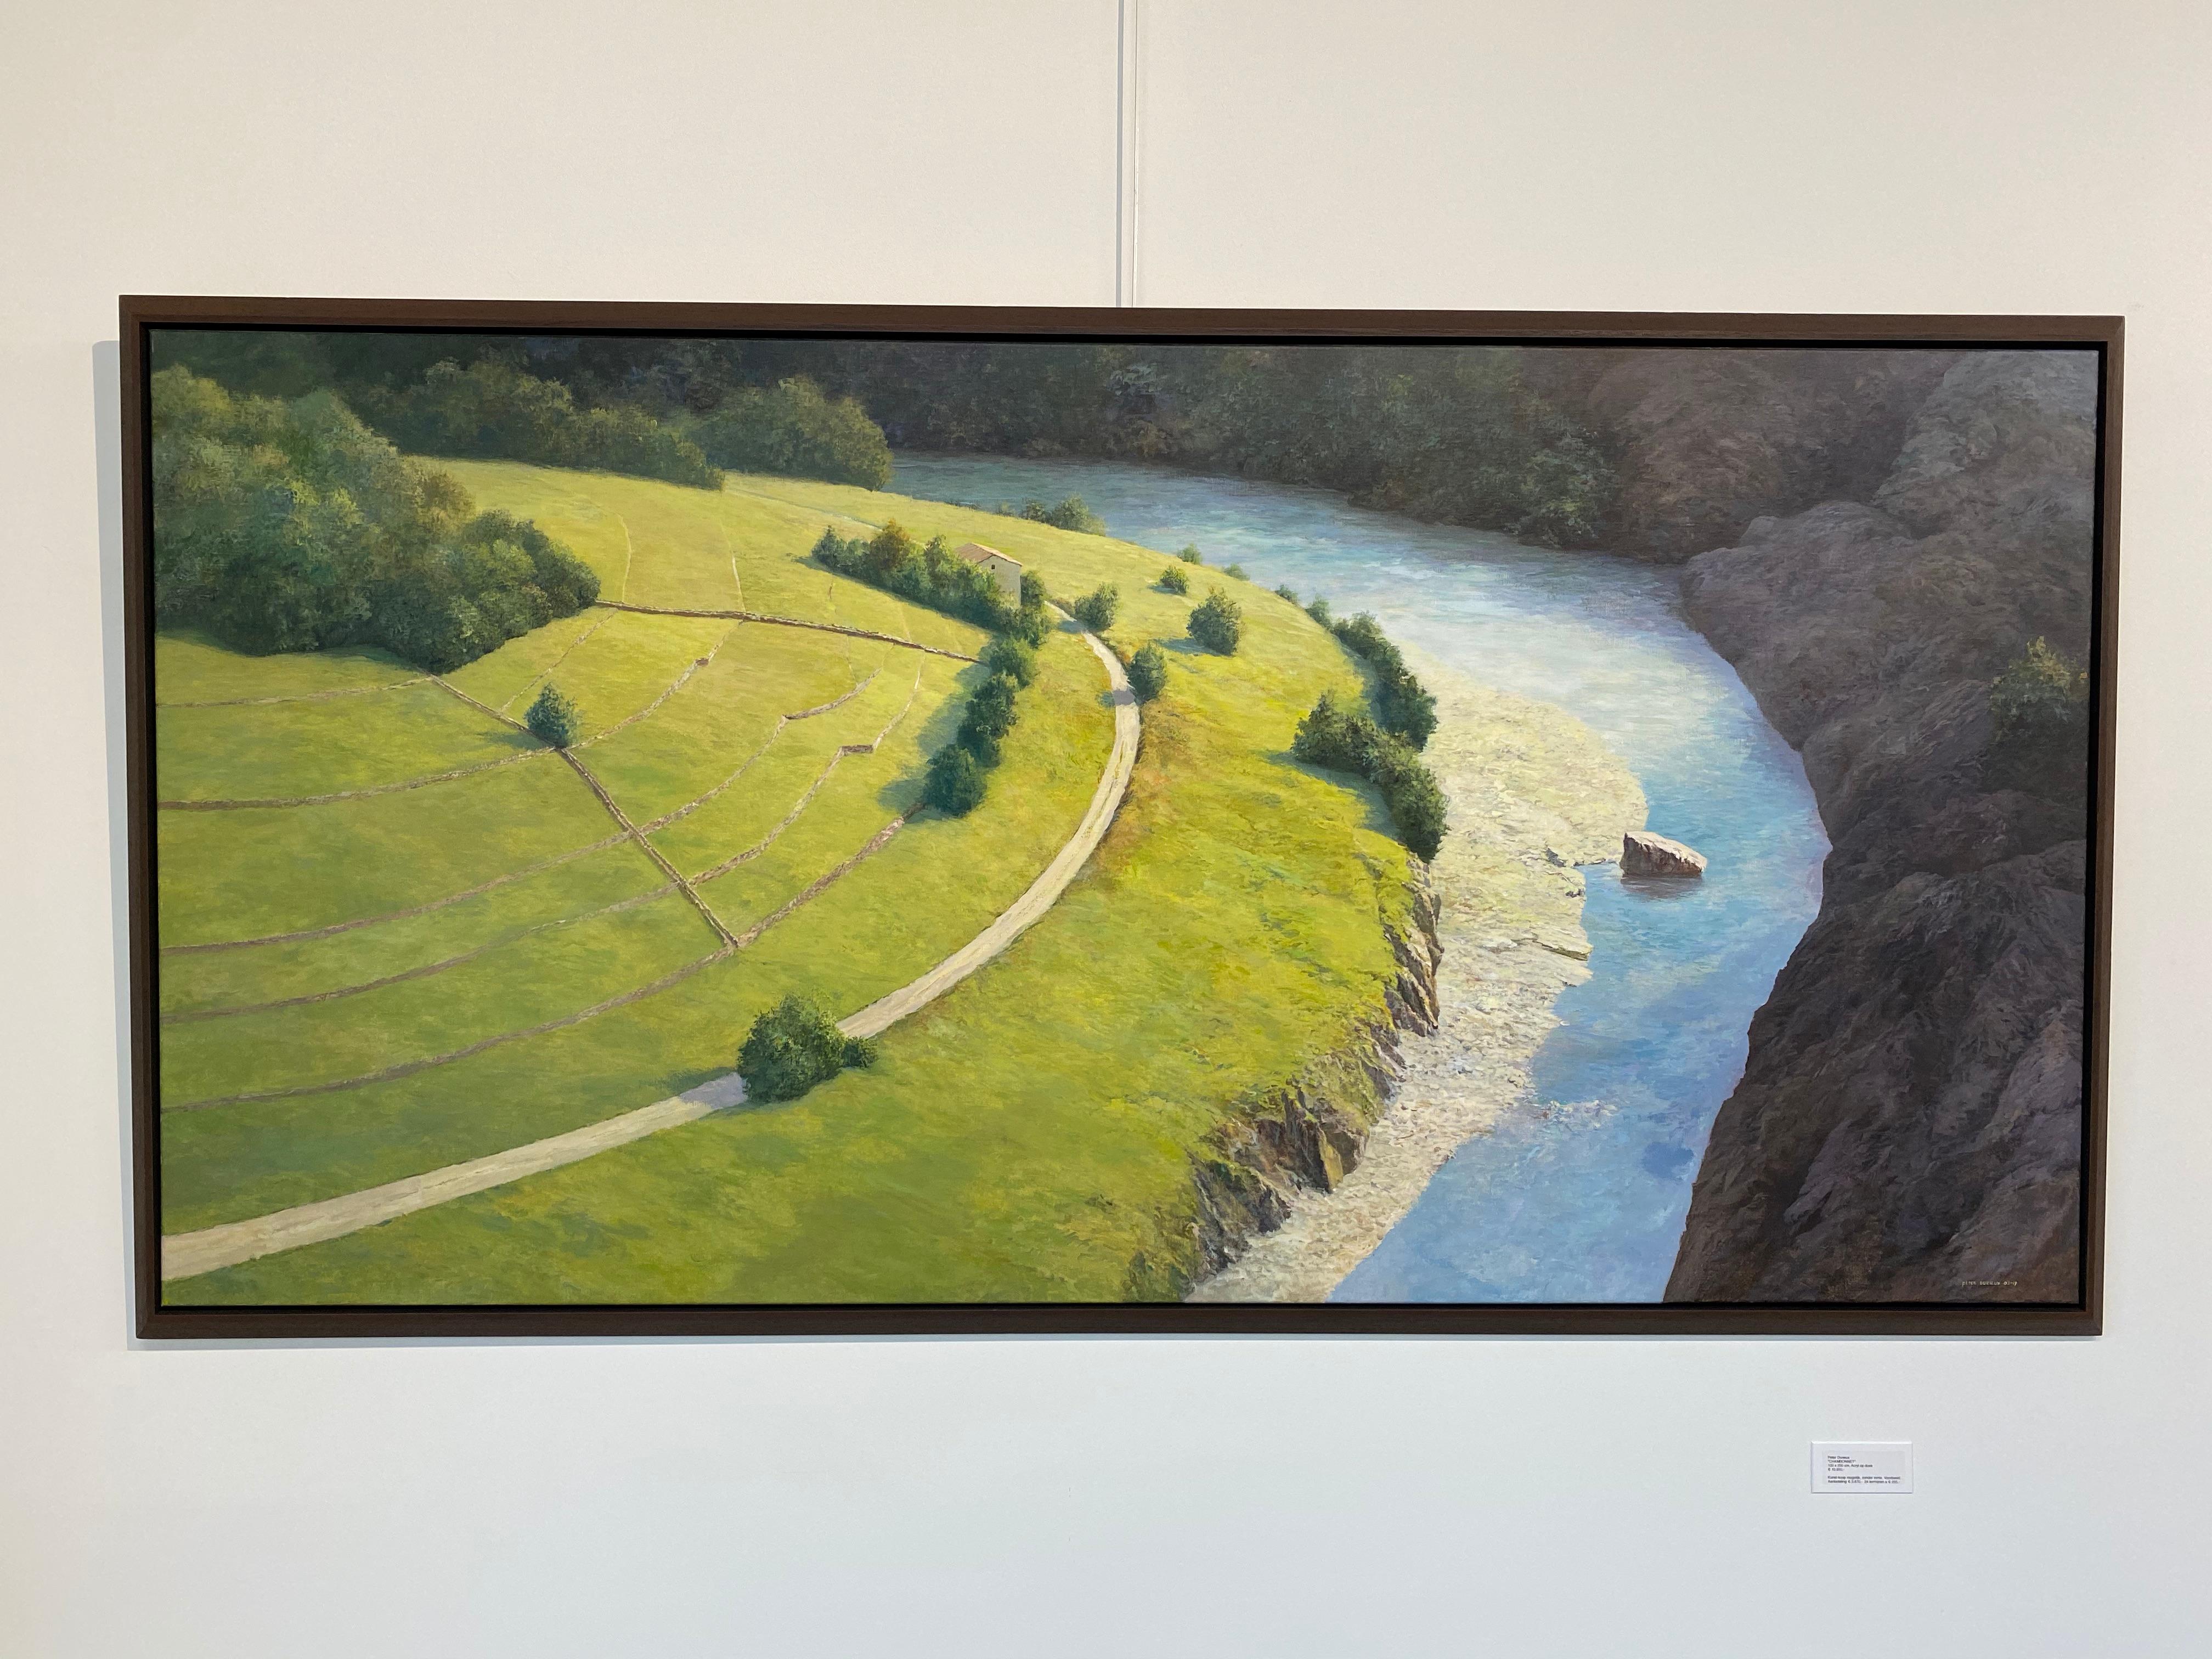 Atemberaubende Ardche- niederländisches Gemälde einer französischen Flusslandschaft aus dem 21. Jahrhundert. – Painting von Peter Durieux